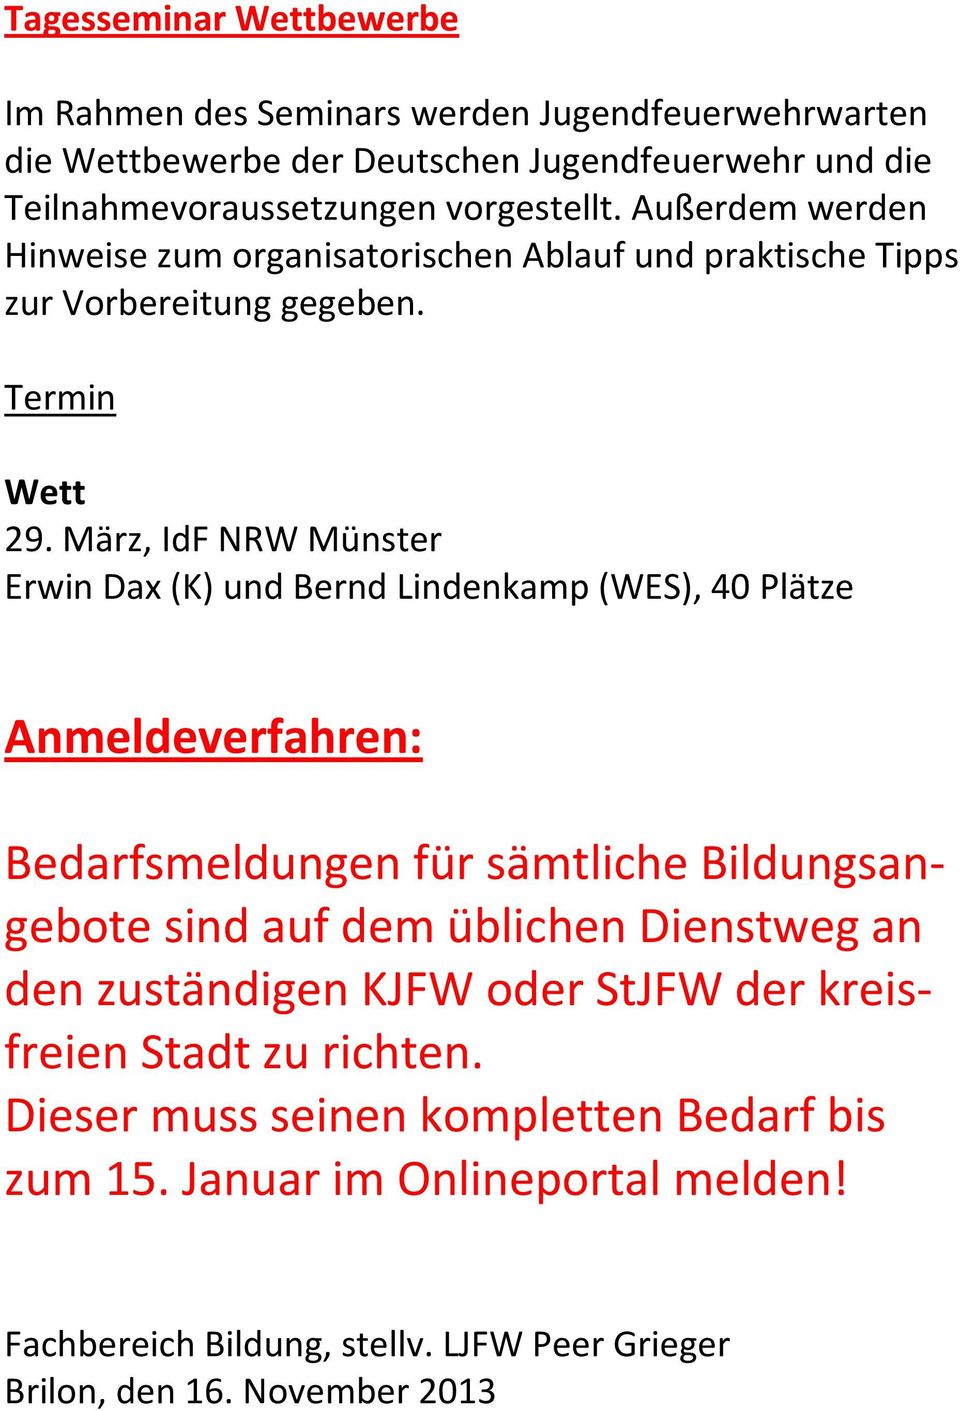 März, IdF NRW Münster Erwin Dax (K) und Bernd Lindenkamp (WES), 40 Plätze Anmeldeverfahren: Bedarfsmeldungen für sämtliche Bildungsangebote sind auf dem üblichen